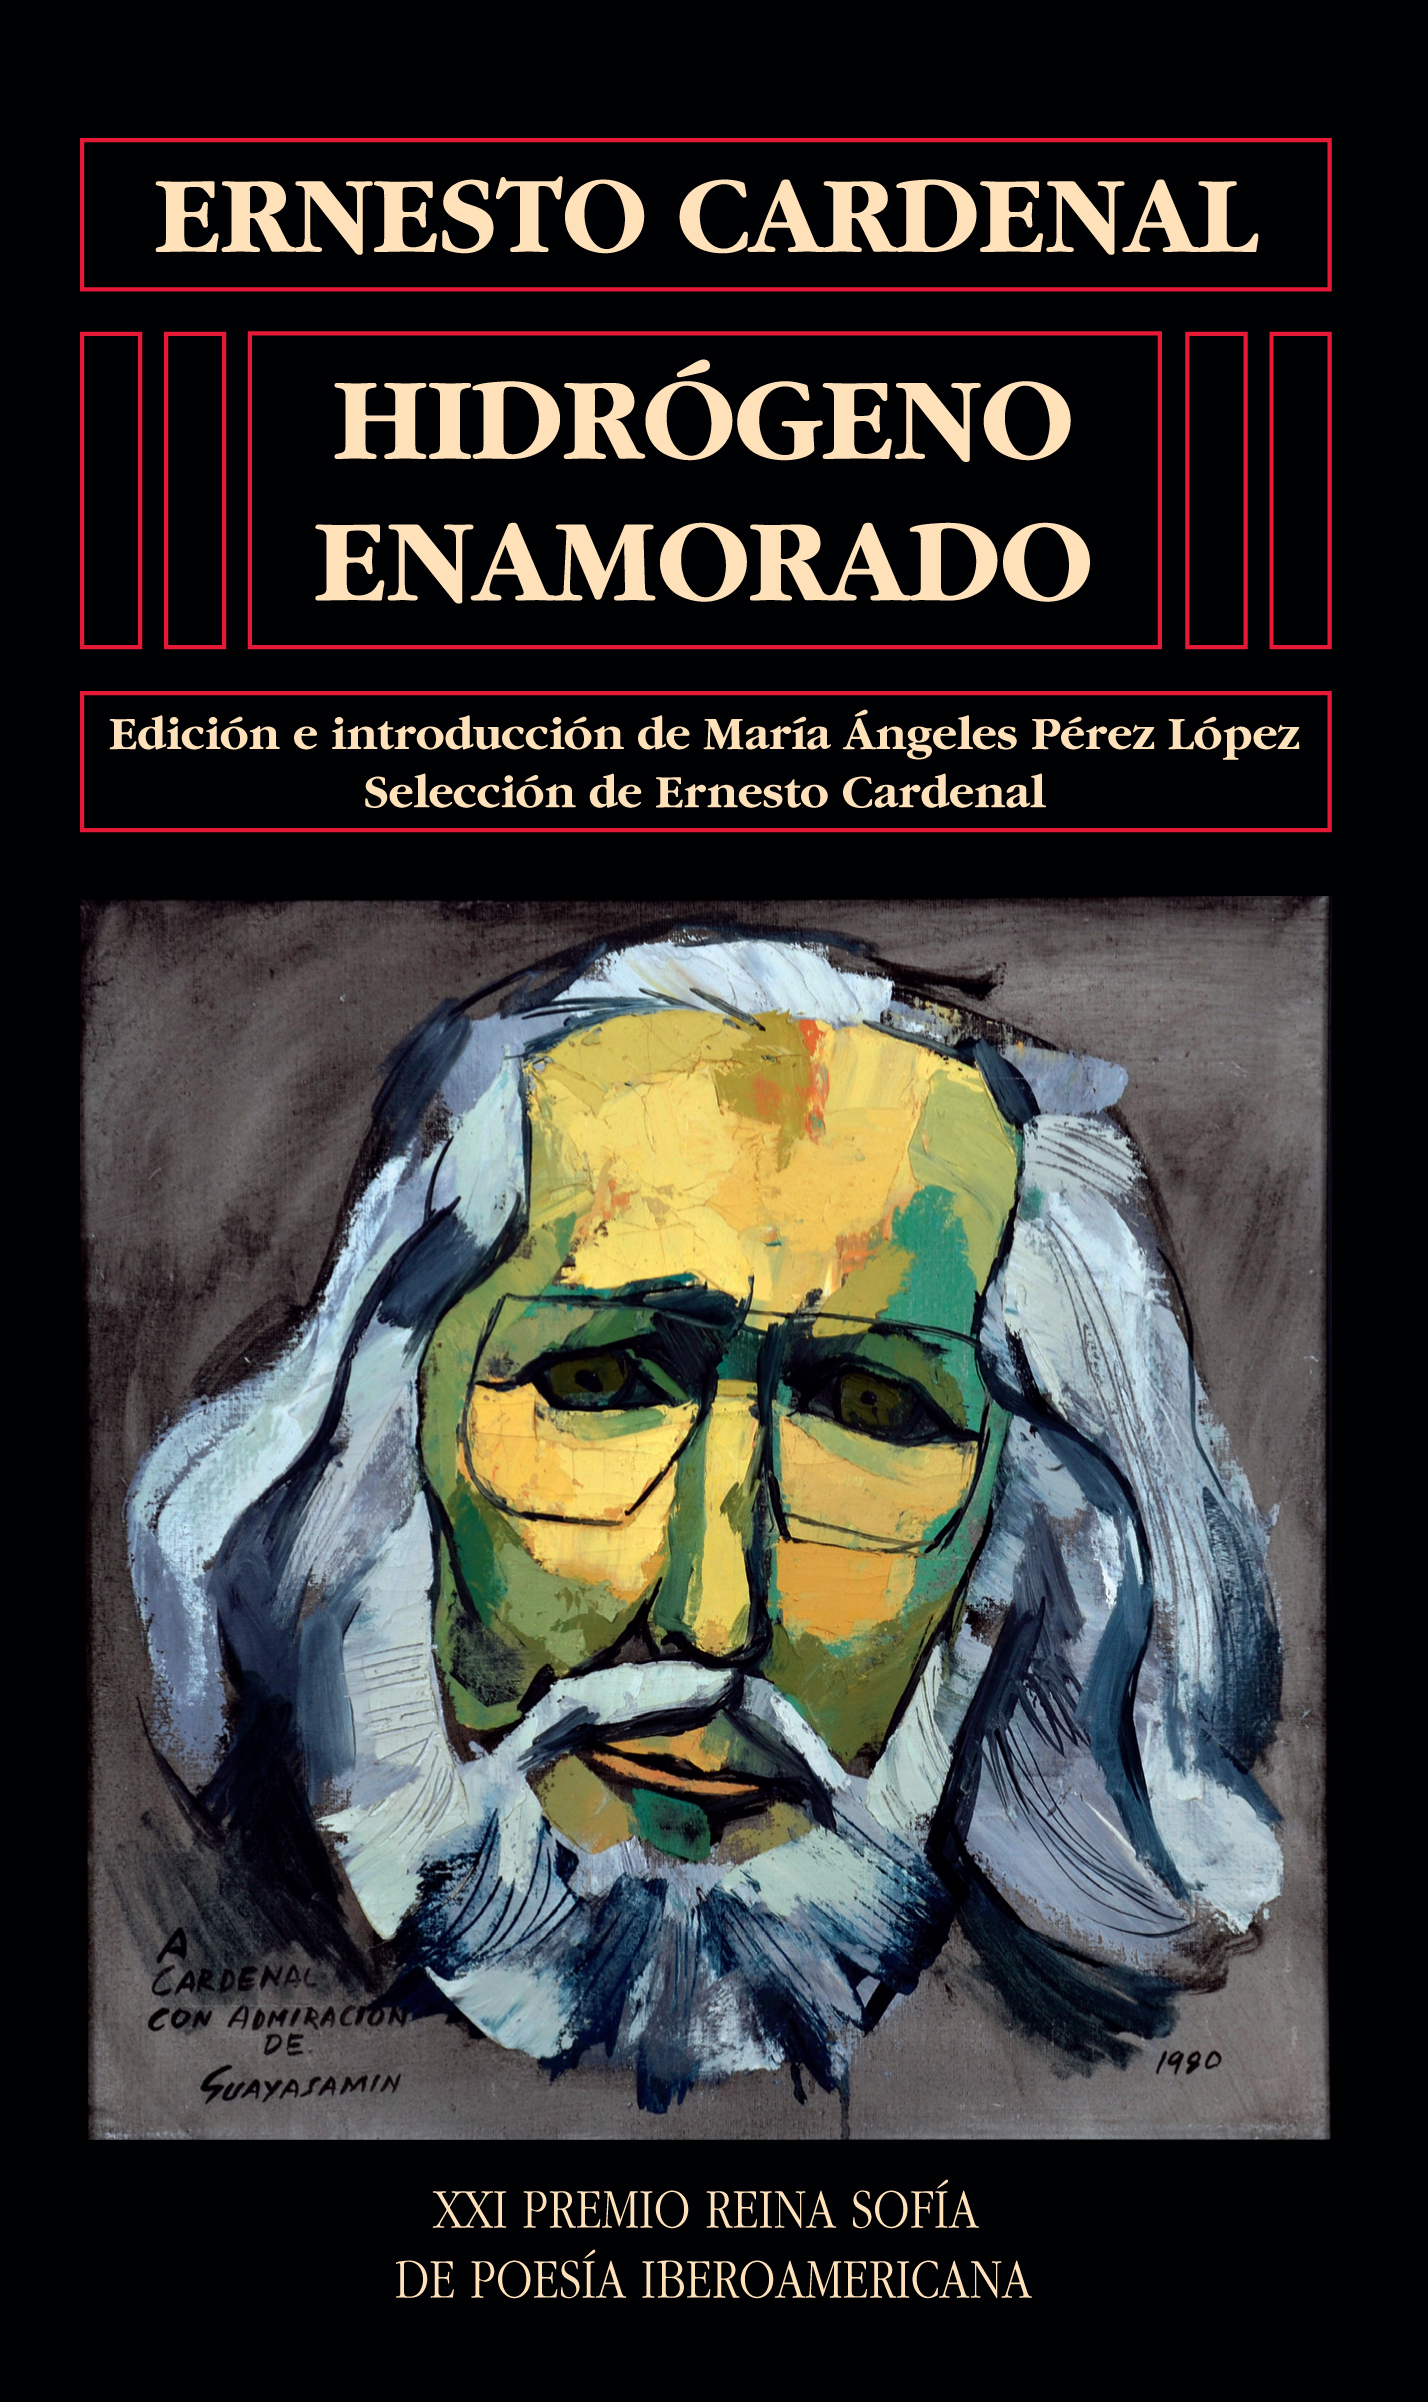 Universidad de Salamanca y Patrimonio Nacional presentan la antología poética del escritor nicaragüense Ernesto Cardenal